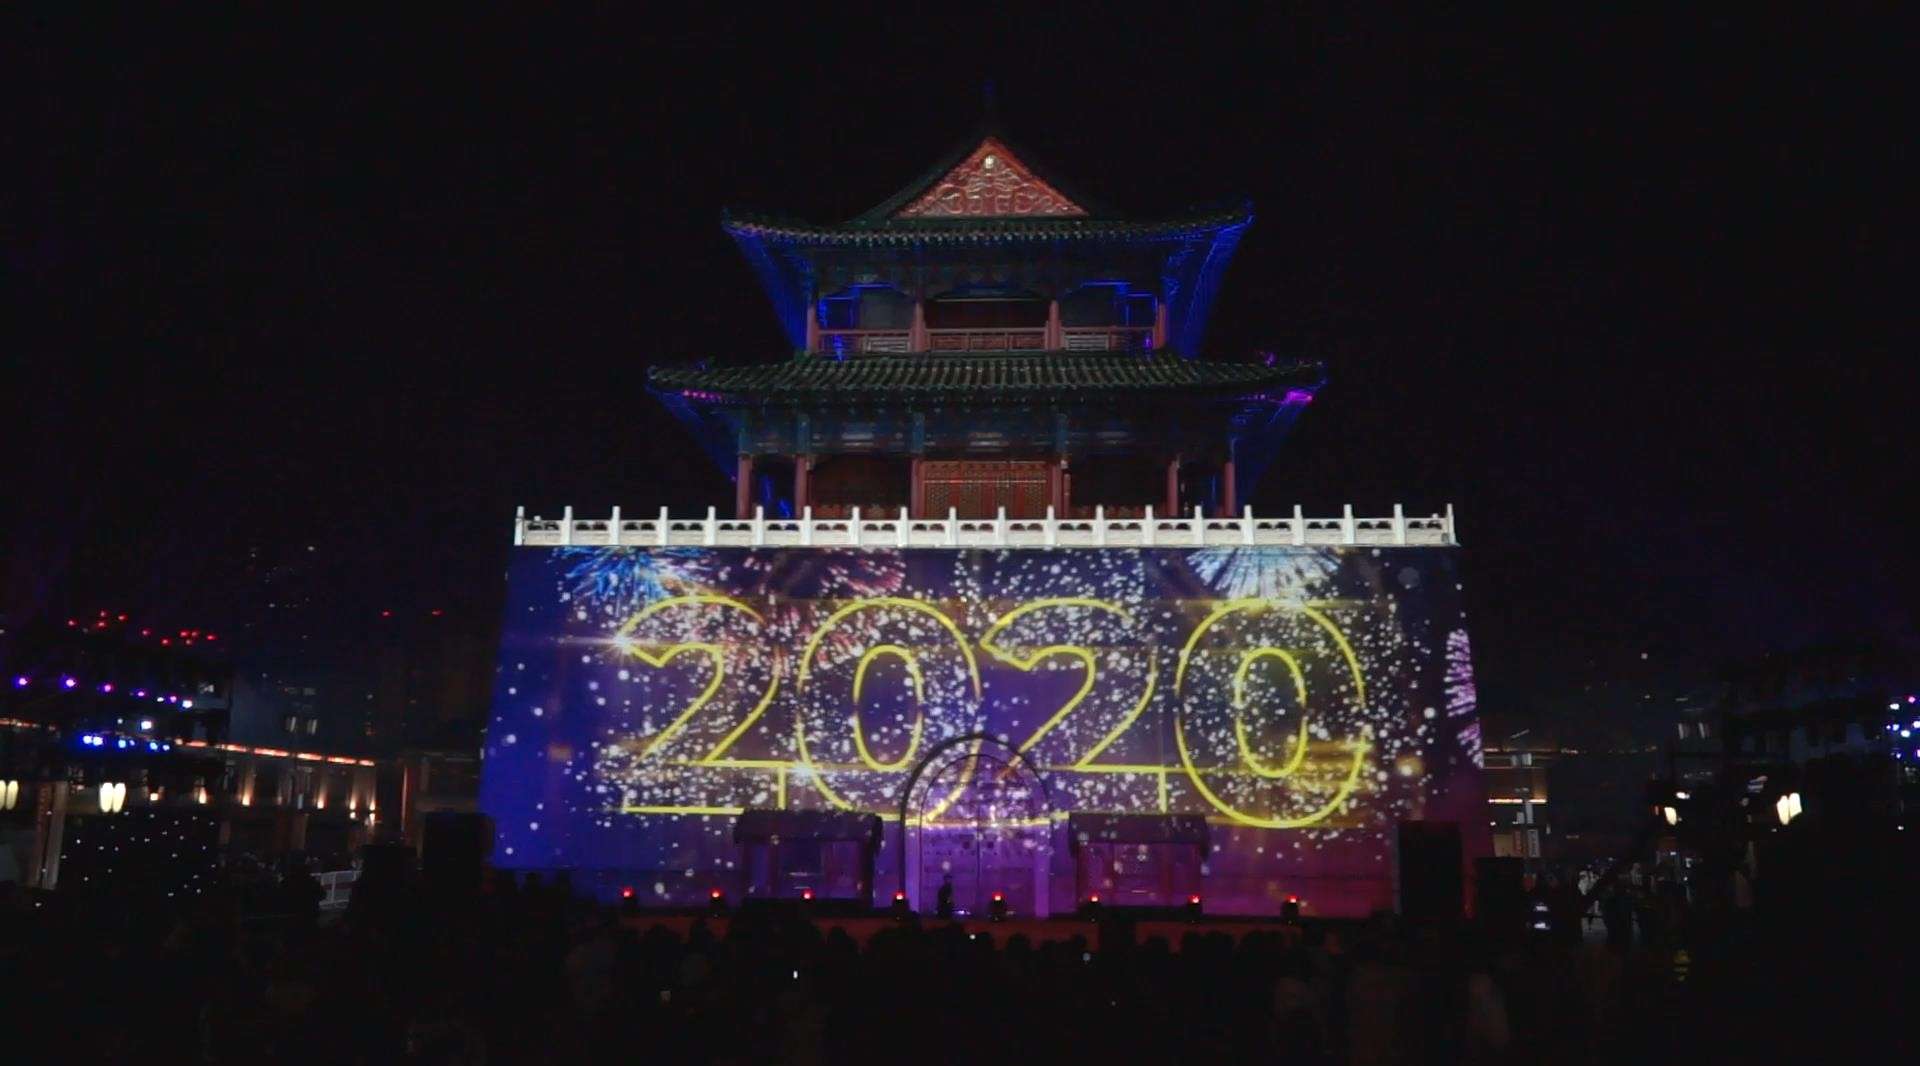 20191231凤凰卫视天津鼓楼晚会跨年晚会直播现场3D投影激光投影